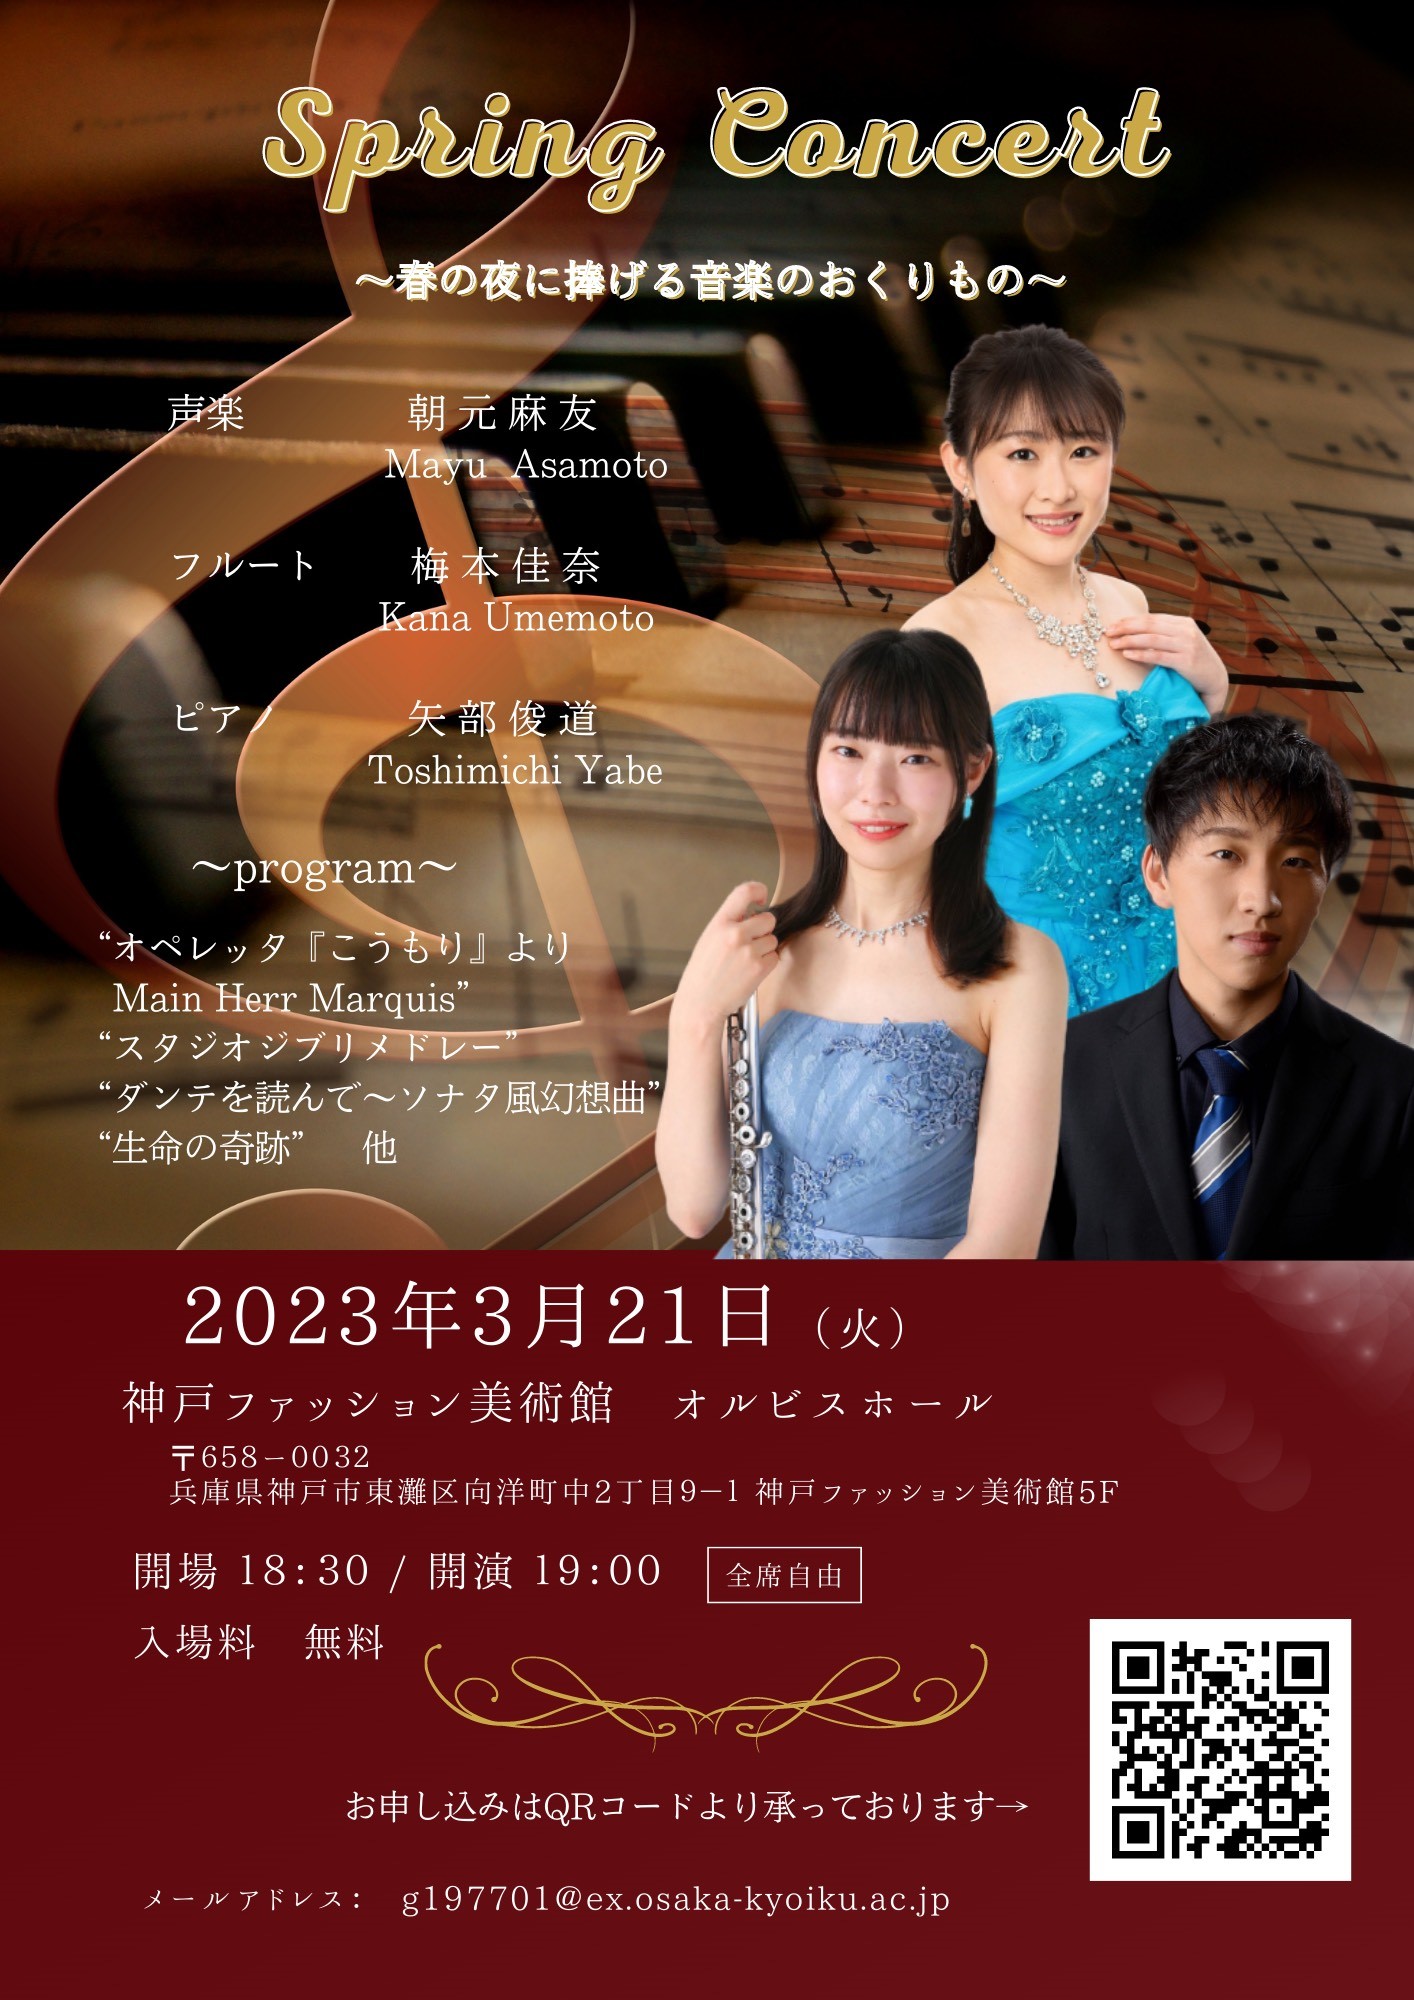 【オルビスホール情報】3/21(祝・火)「Spring Concert ～春の夜に捧げる音楽のおくりもの～」開催のお知らせ